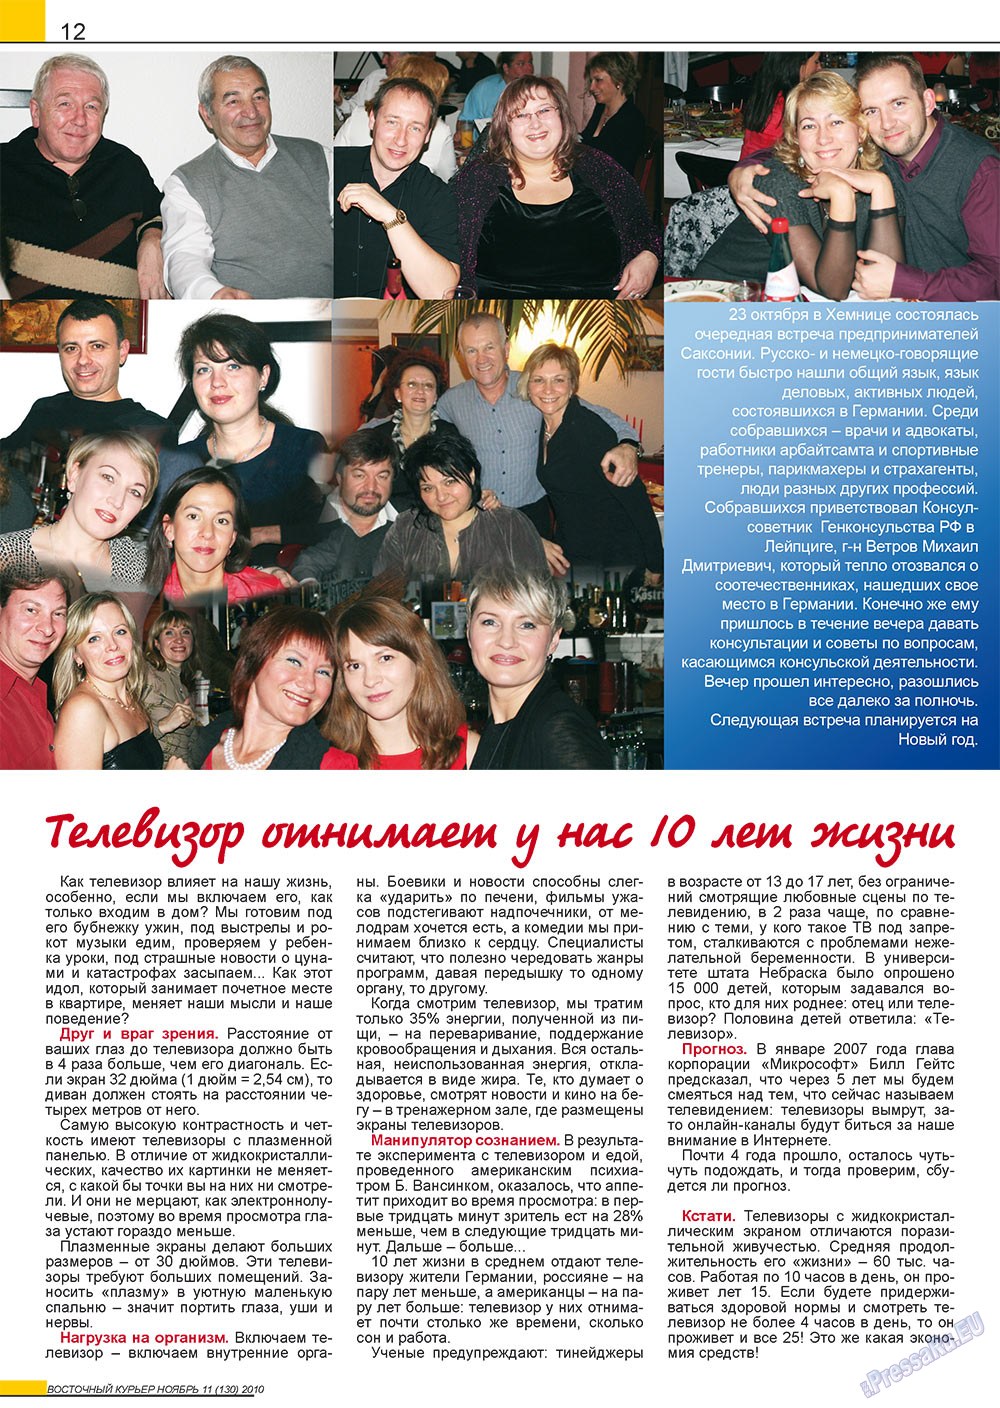 Восточный курьер (журнал). 2010 год, номер 11, стр. 12